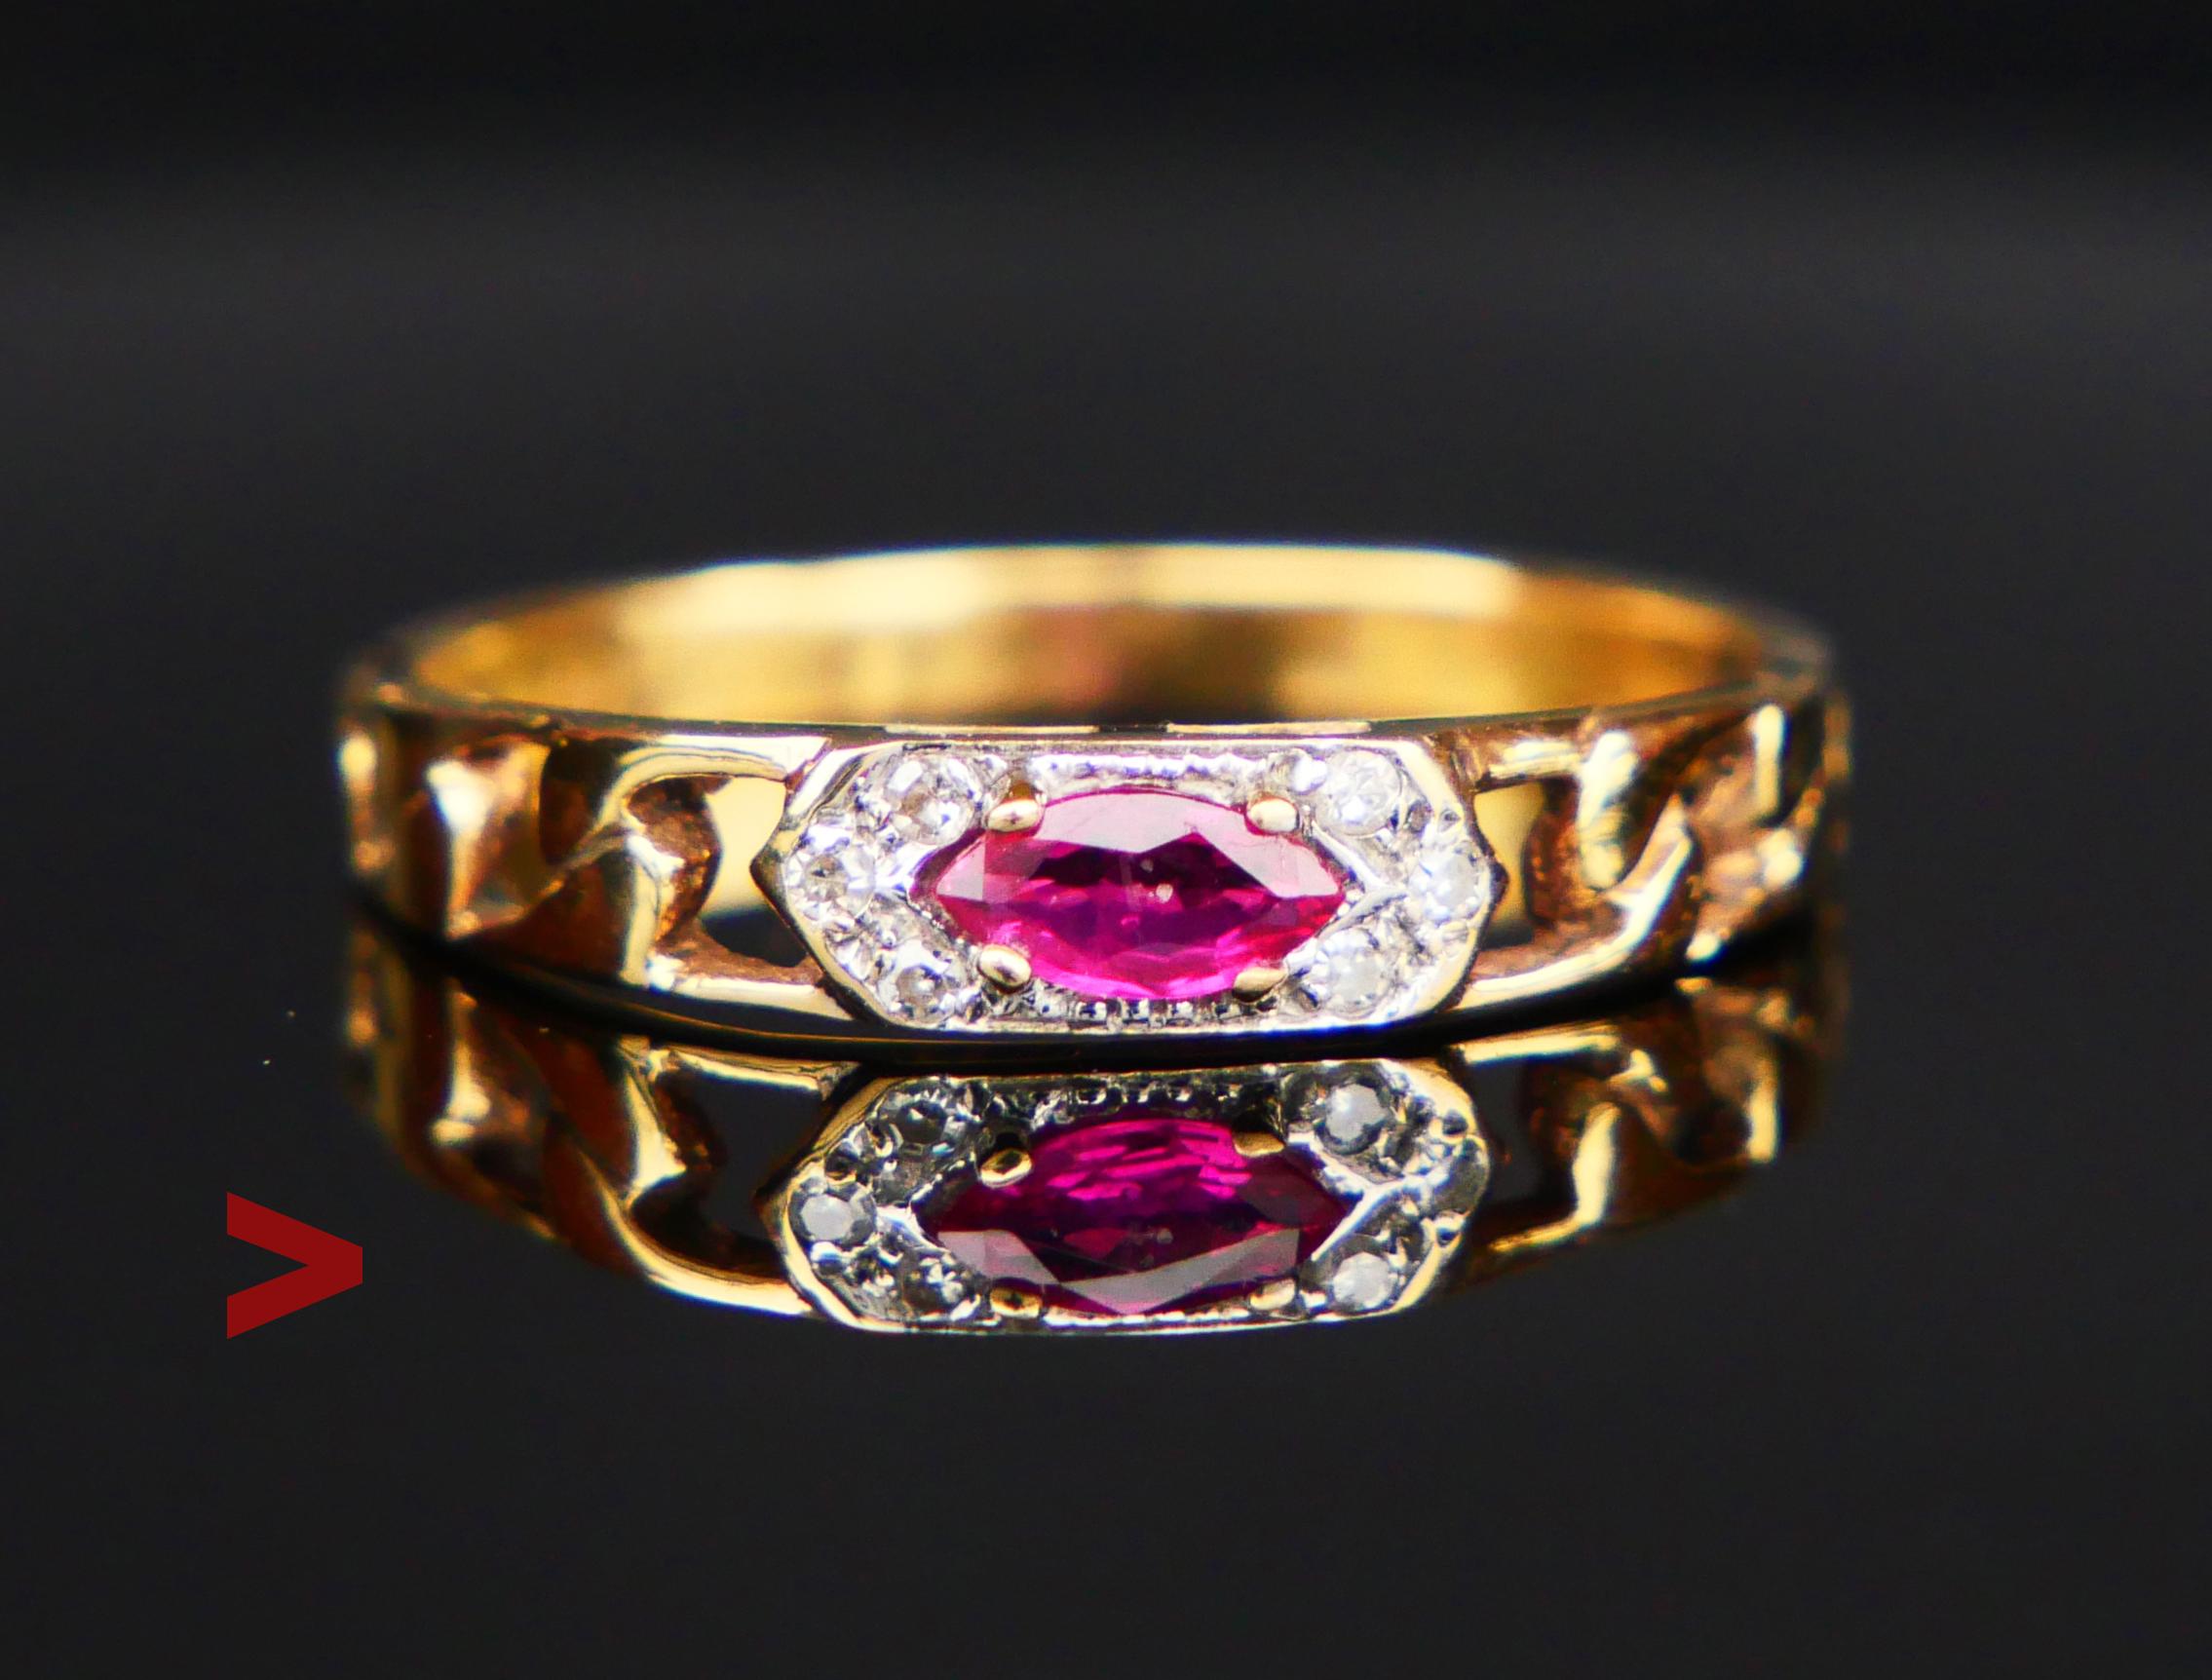 All Seeing Eye Ring mit geketteten Schultern mit einem natürlichen Rubin im Marquise-Schliff (5,5 mm x 2,75 mm / ca. 0,2ct) und sechs Diamanten im Acht-Schliff (Ø 1 mm / 0,005ct), die alle in einem sechszackigen Cluster aus Weißgold oder Platin